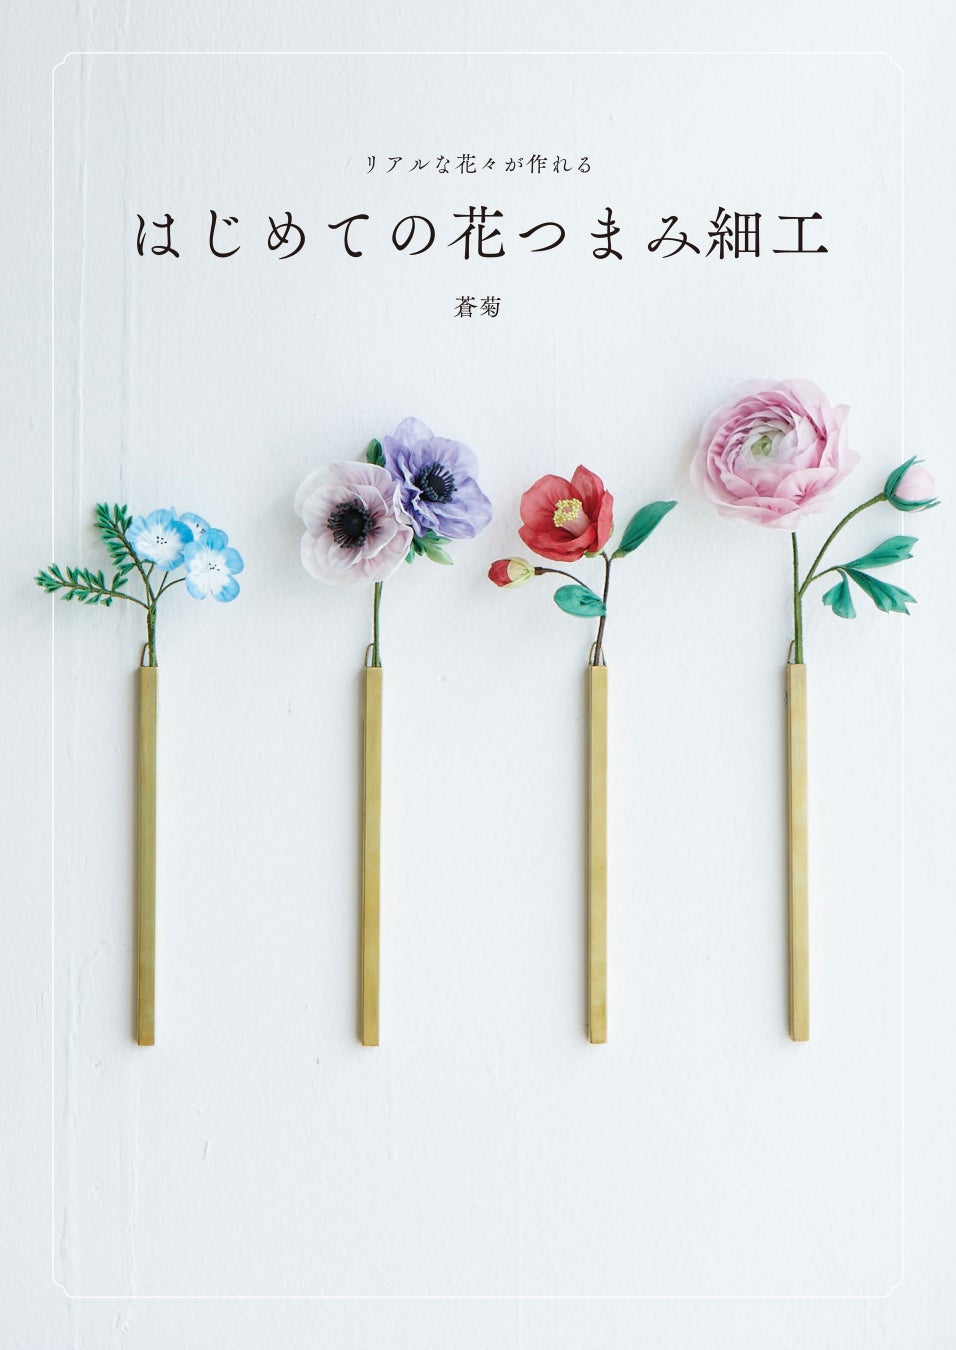 つまみ細工の概念を変えた、SNSで注目の作家 “蒼菊” 初の著書『はじめての花つまみ細工』9月発売！